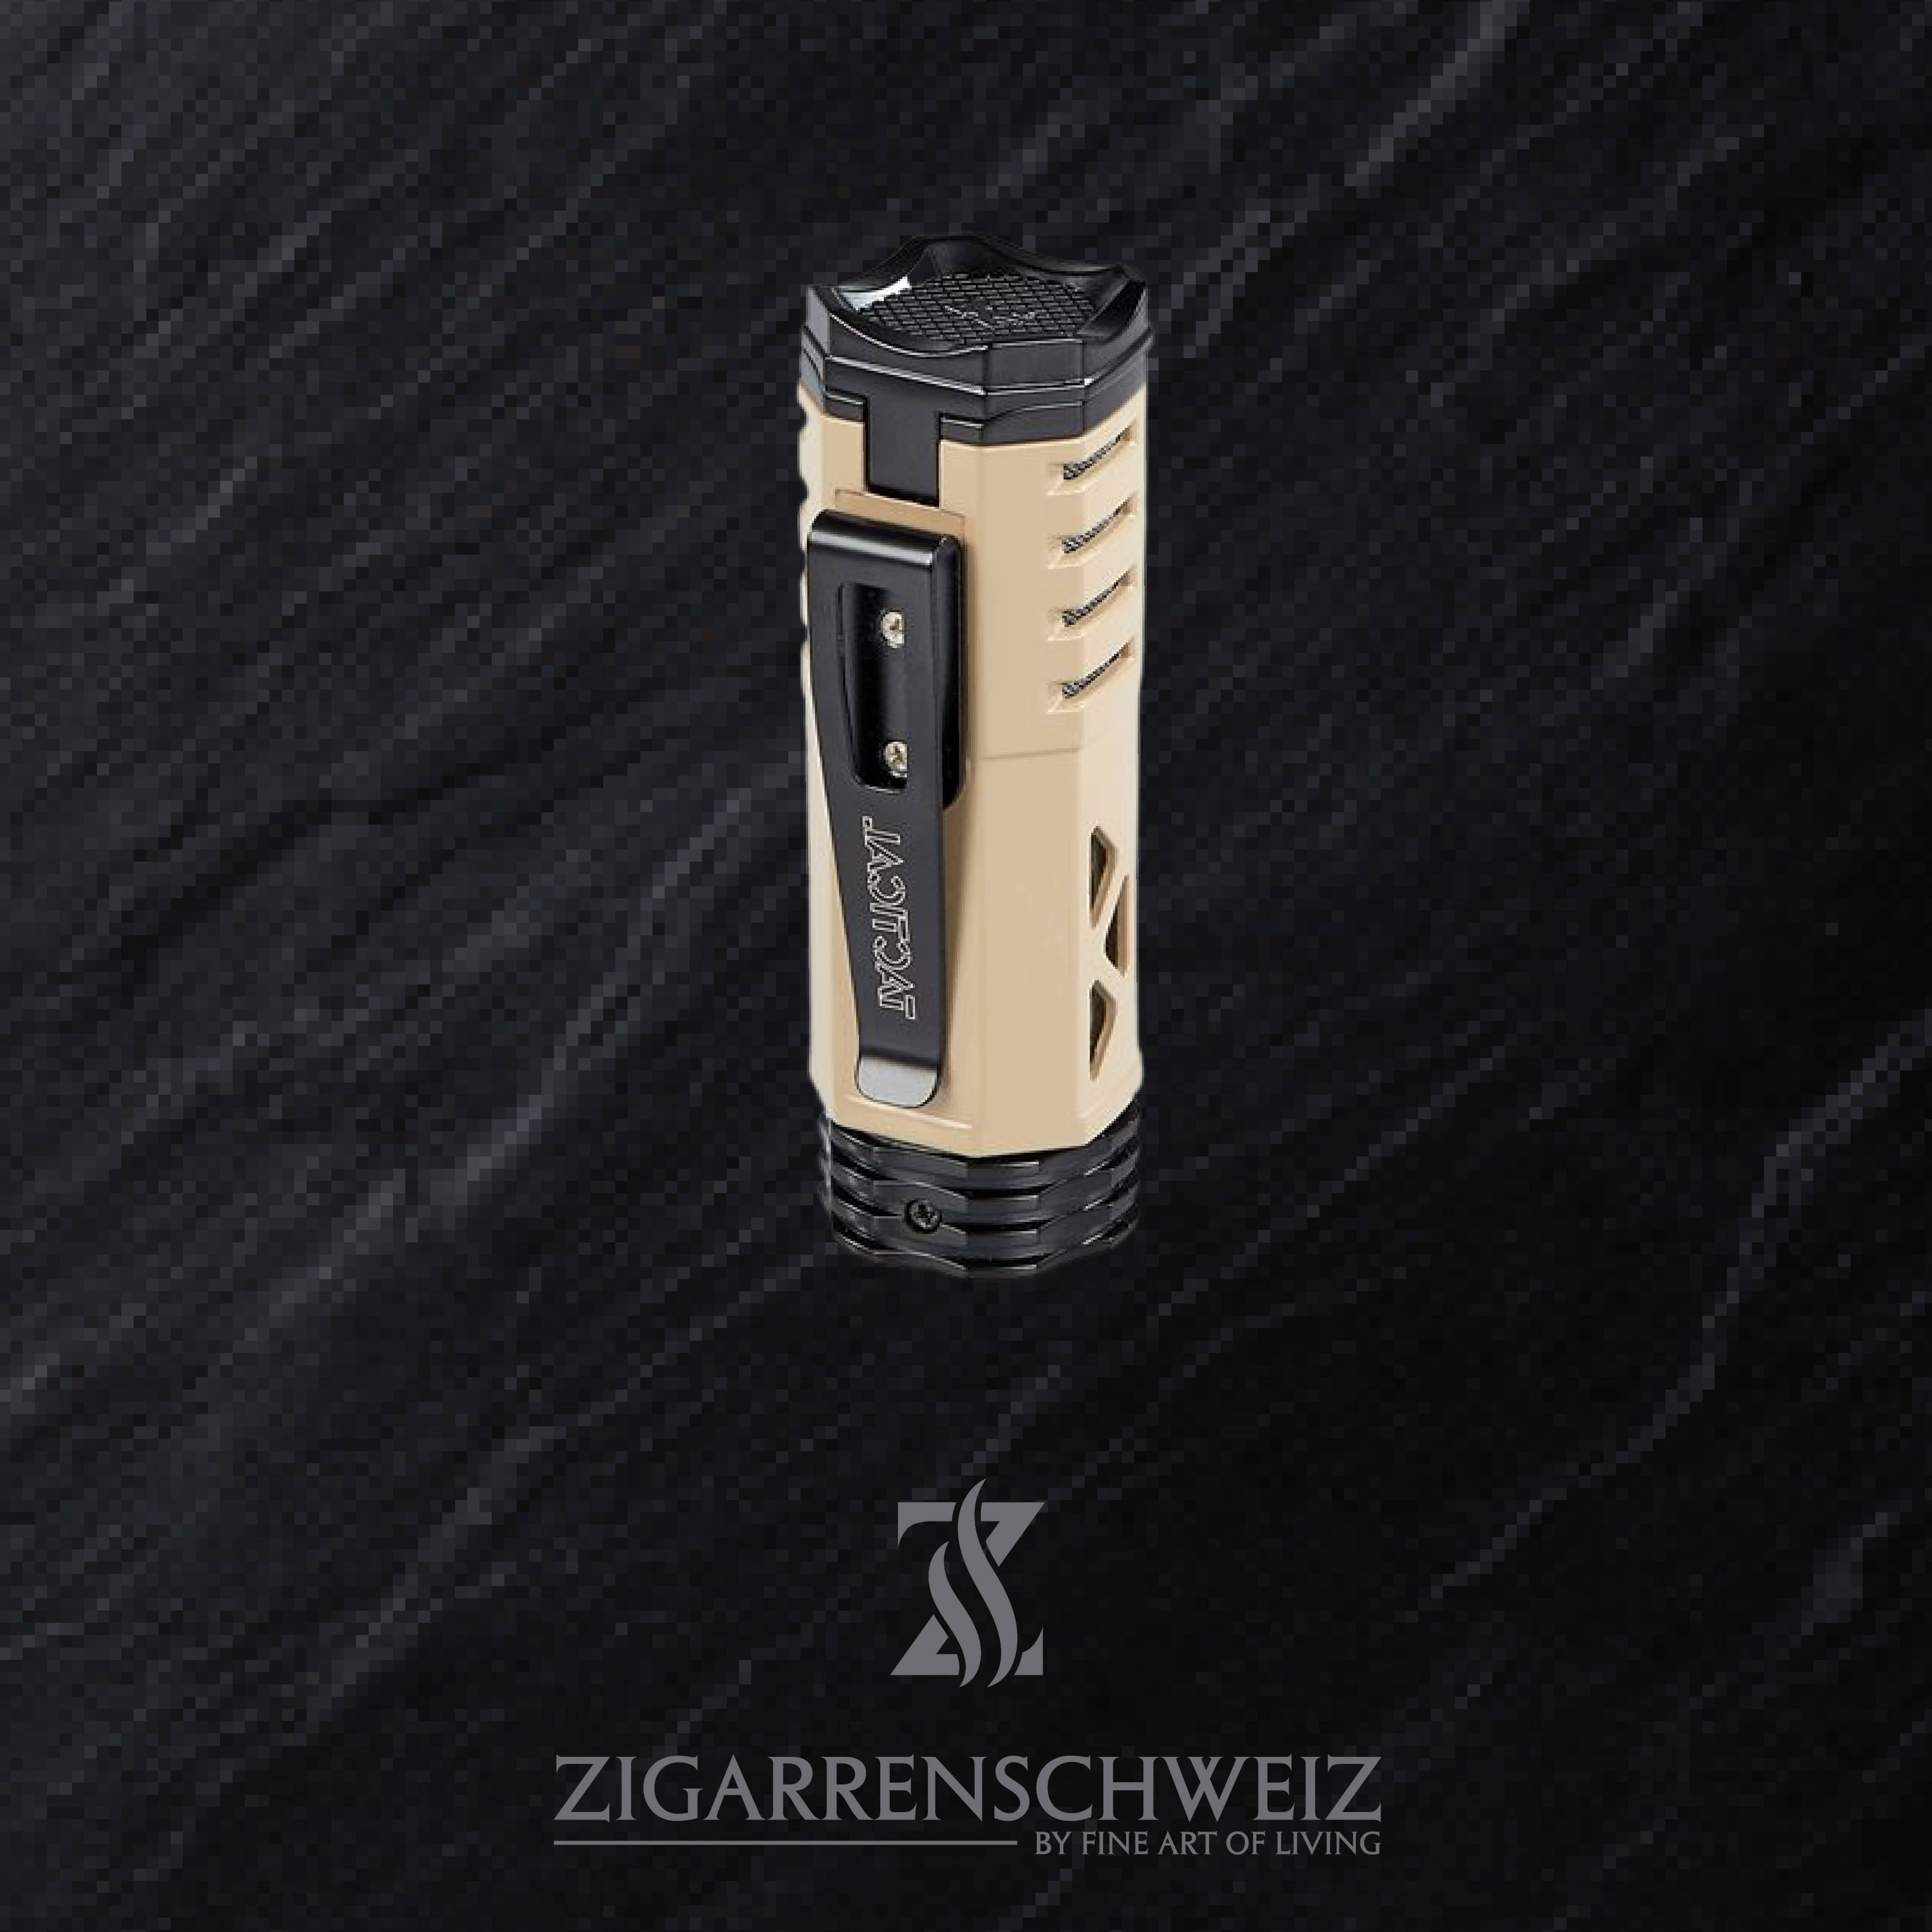 Xikar Tactical 1 Single Jet Flame Feuerzeug für Zigarren, Gurt-Clip + Zigarren Halter / Farbe: Gun Metal